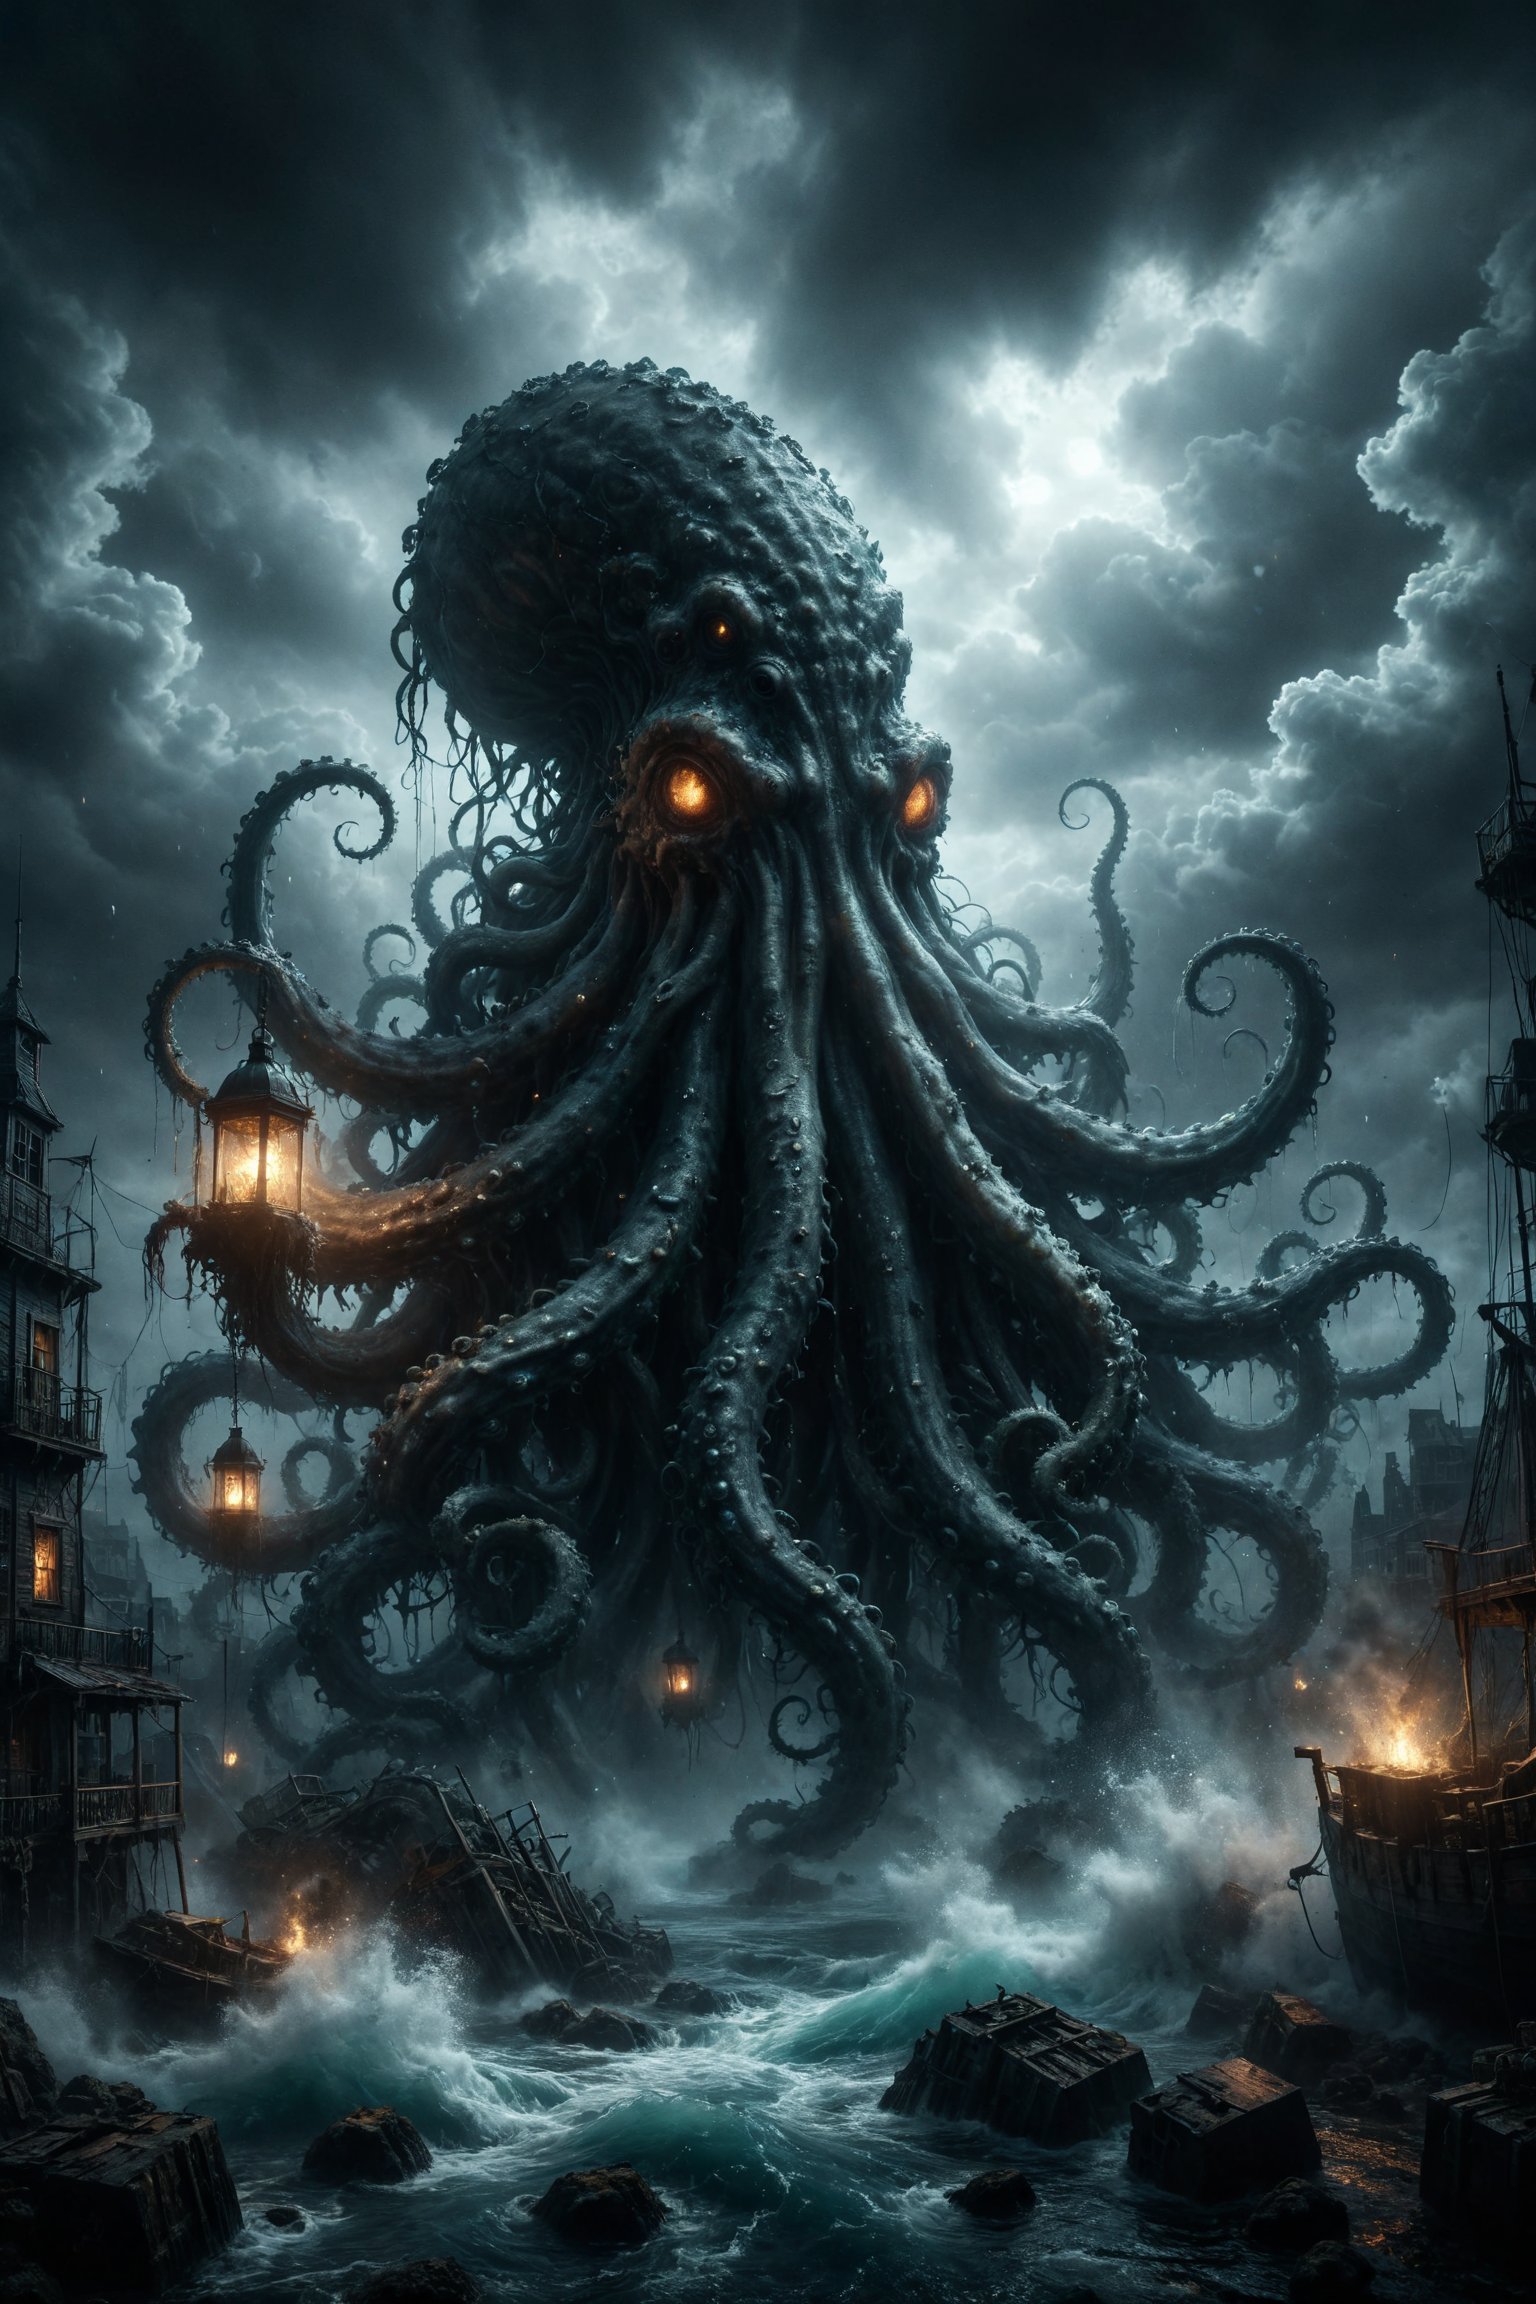 mitica y misteriosa escena gotica de Un kraken gigante con tentáculos adornados con gemas brillantes, emergiendo de las aguas oscuras y turbulentas.